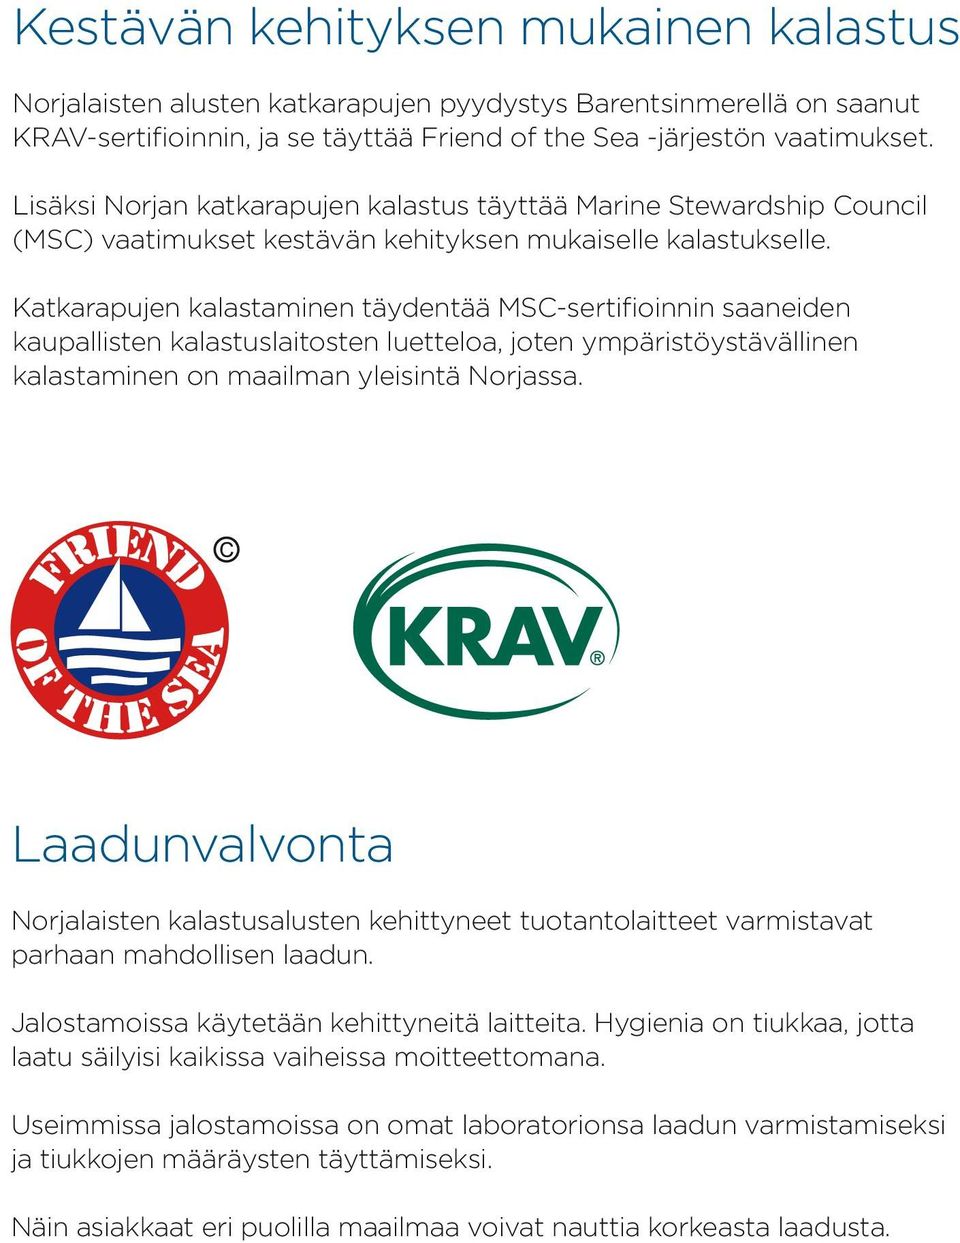 Katkarapujen kalastaminen täydentää MSC-sertifioinnin saaneiden kaupallisten kalastuslaitosten luetteloa, joten ympäristöystävällinen kalastaminen on maailman yleisintä Norjassa.